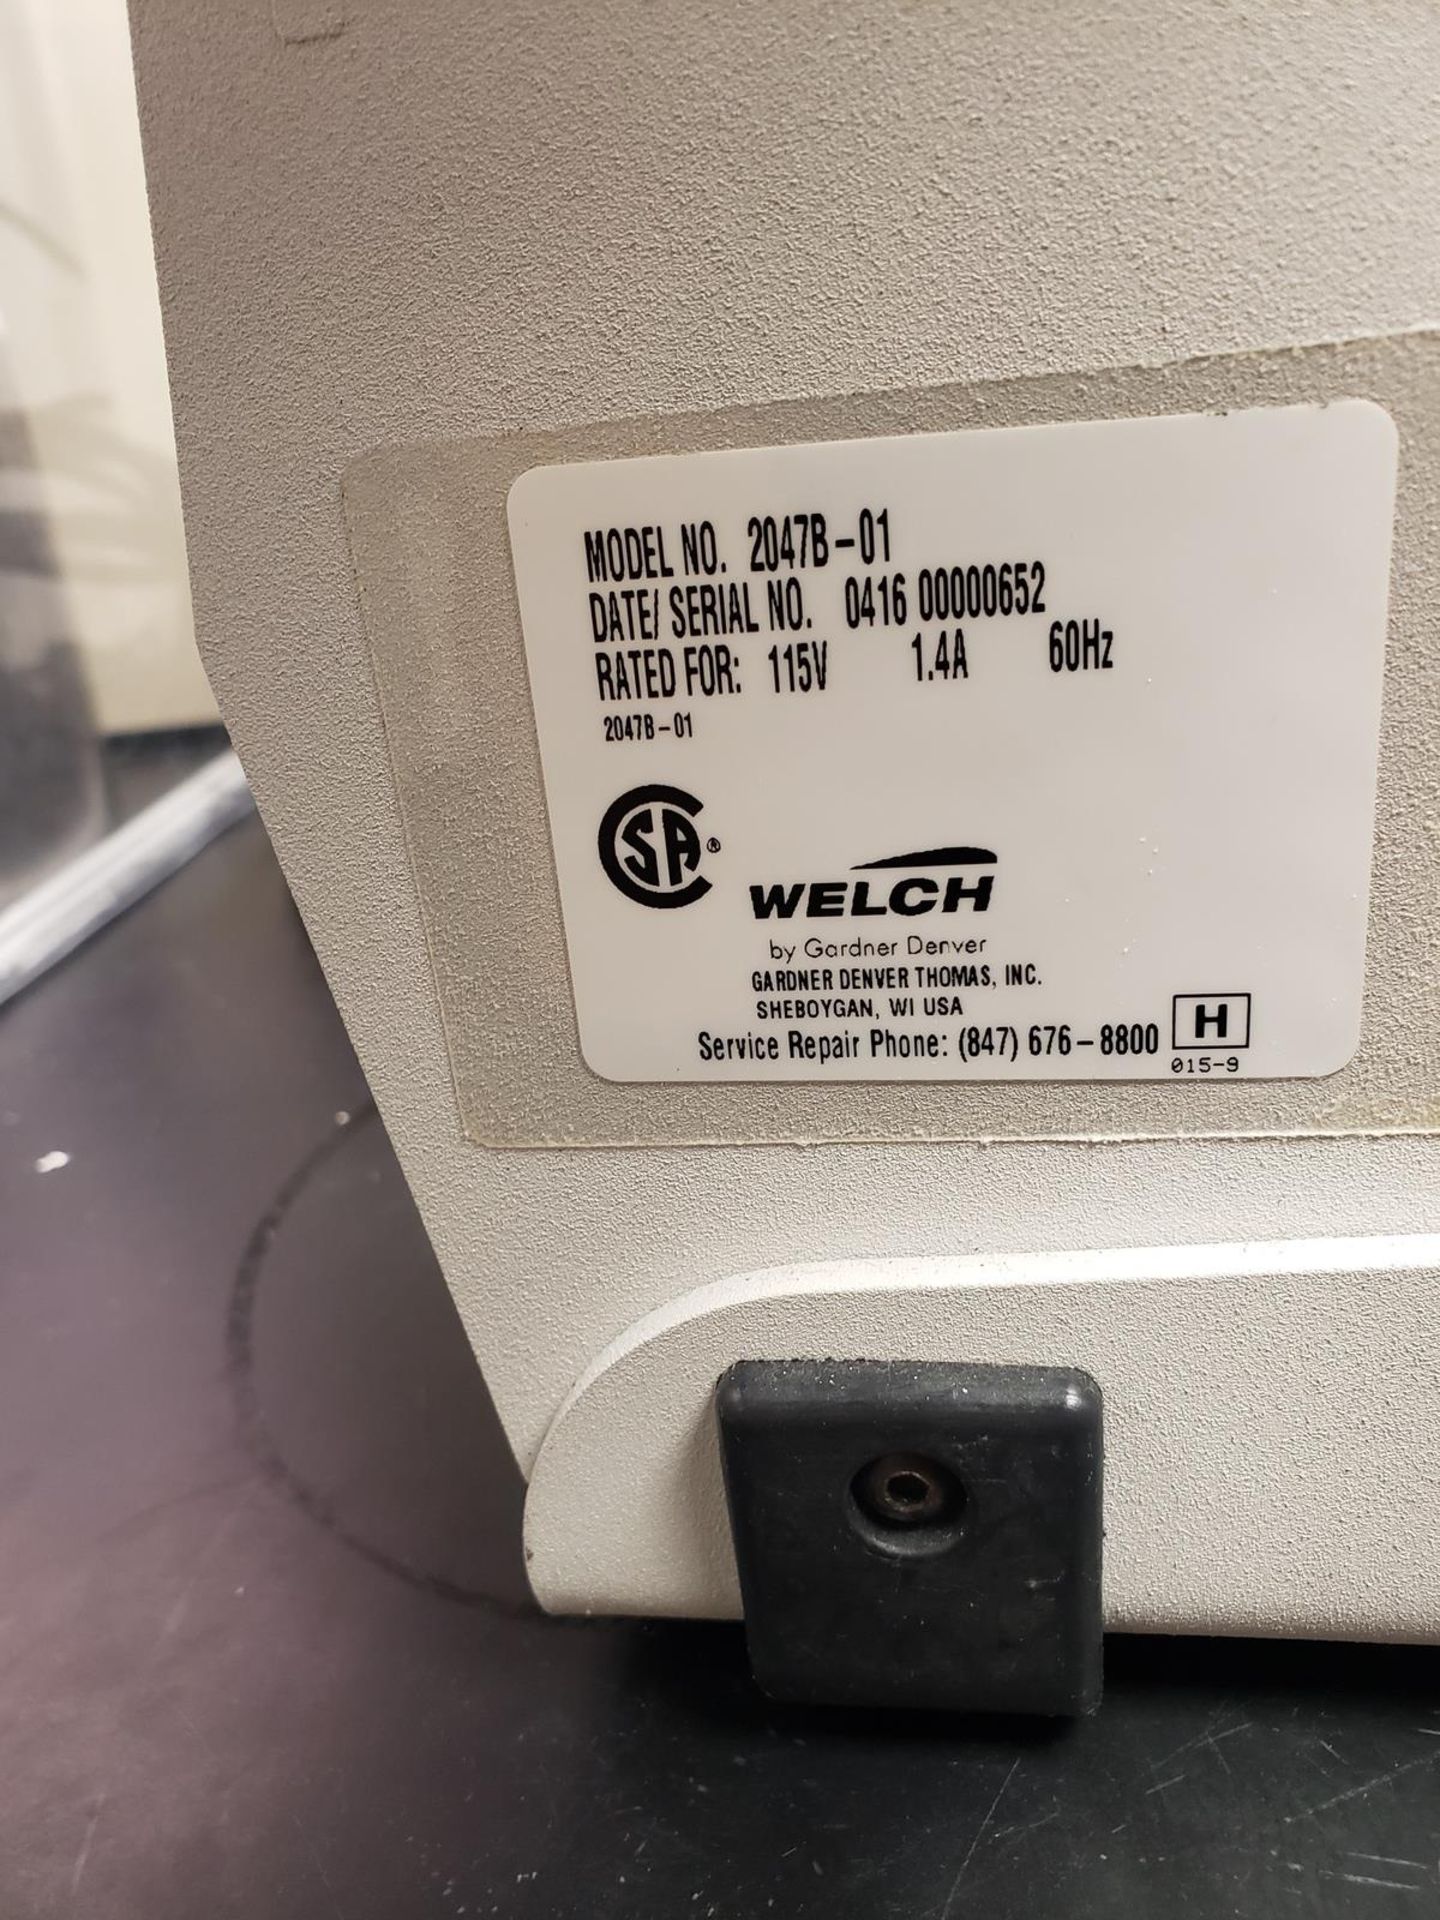 Welch Vacuum Pump, M# 2047B-01, S/N 0416 00000652 - Image 2 of 2